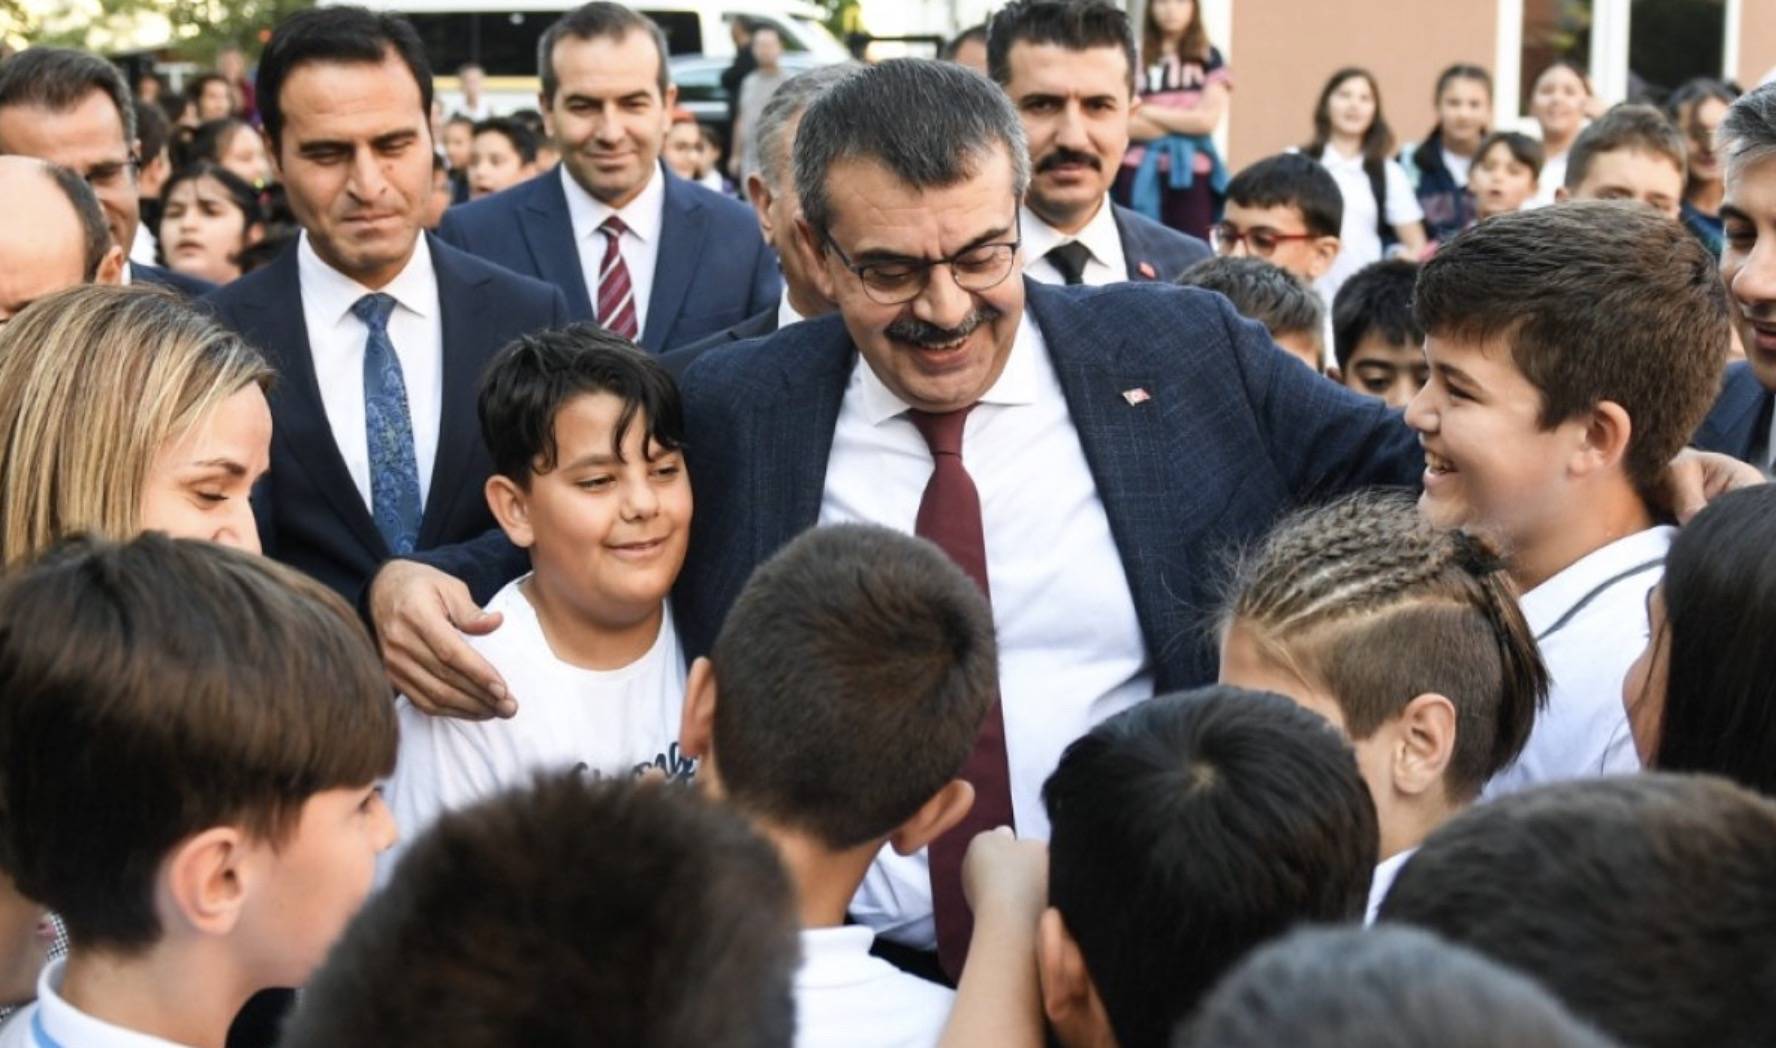 Millî Eğitim Bakanı Yusuf Tekin, gerçekleştirdiği okul ziyaretleri kapsamında Ankara Yenimahalle Nasrettin Hoca Ortaokulunu ziyaret etti. 